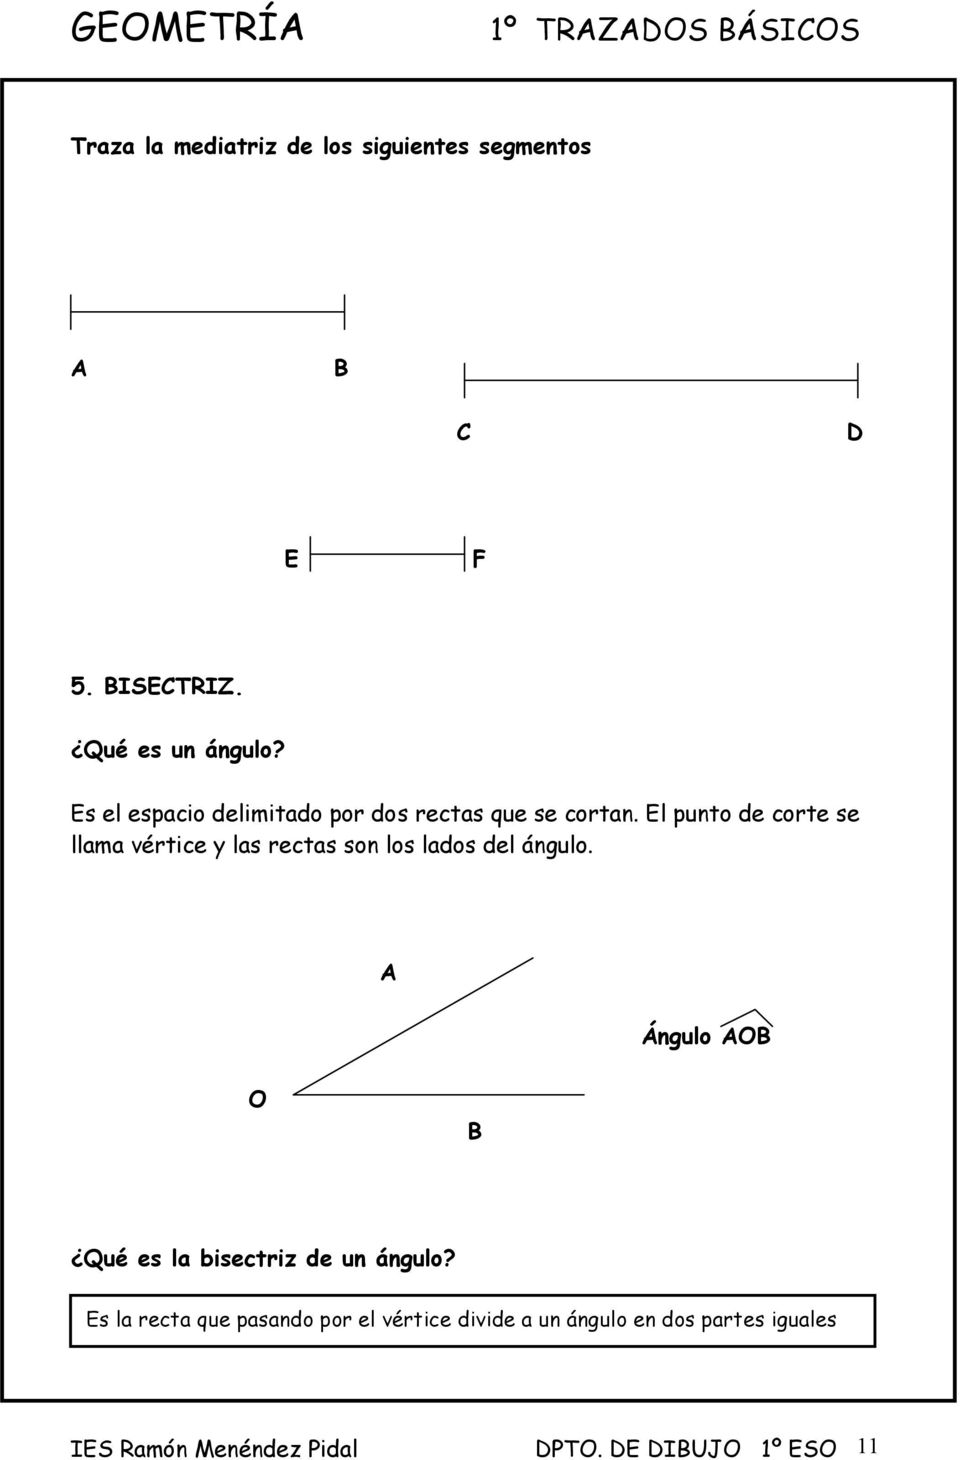 El punto de corte se llama vértice y las rectas son los lados del ángulo.